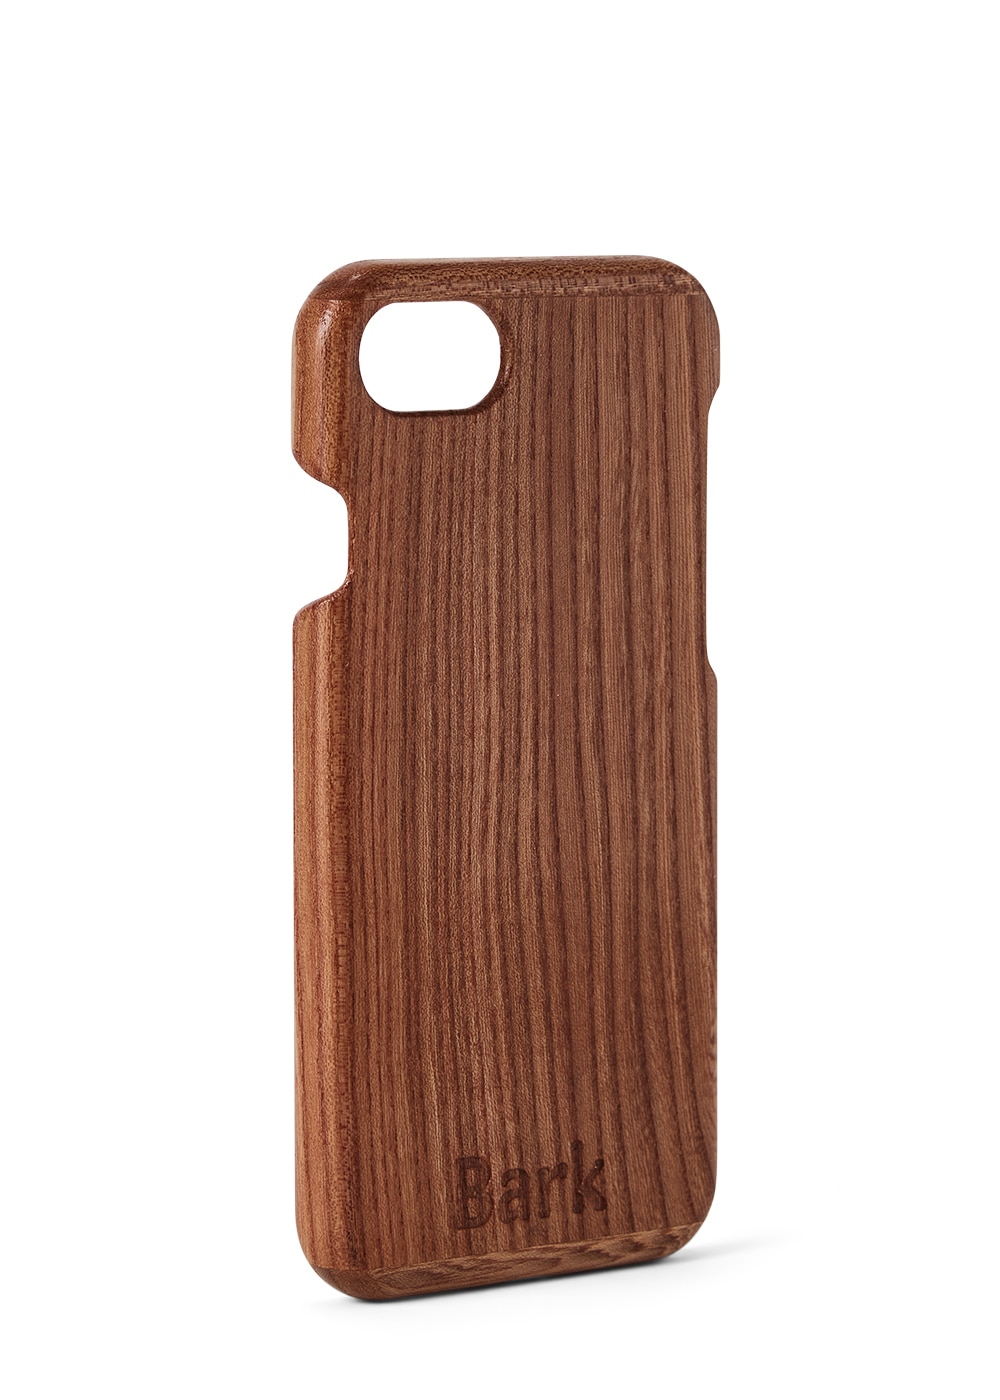 iPhone SE (2020) case made of Swedish hardwood - Alm